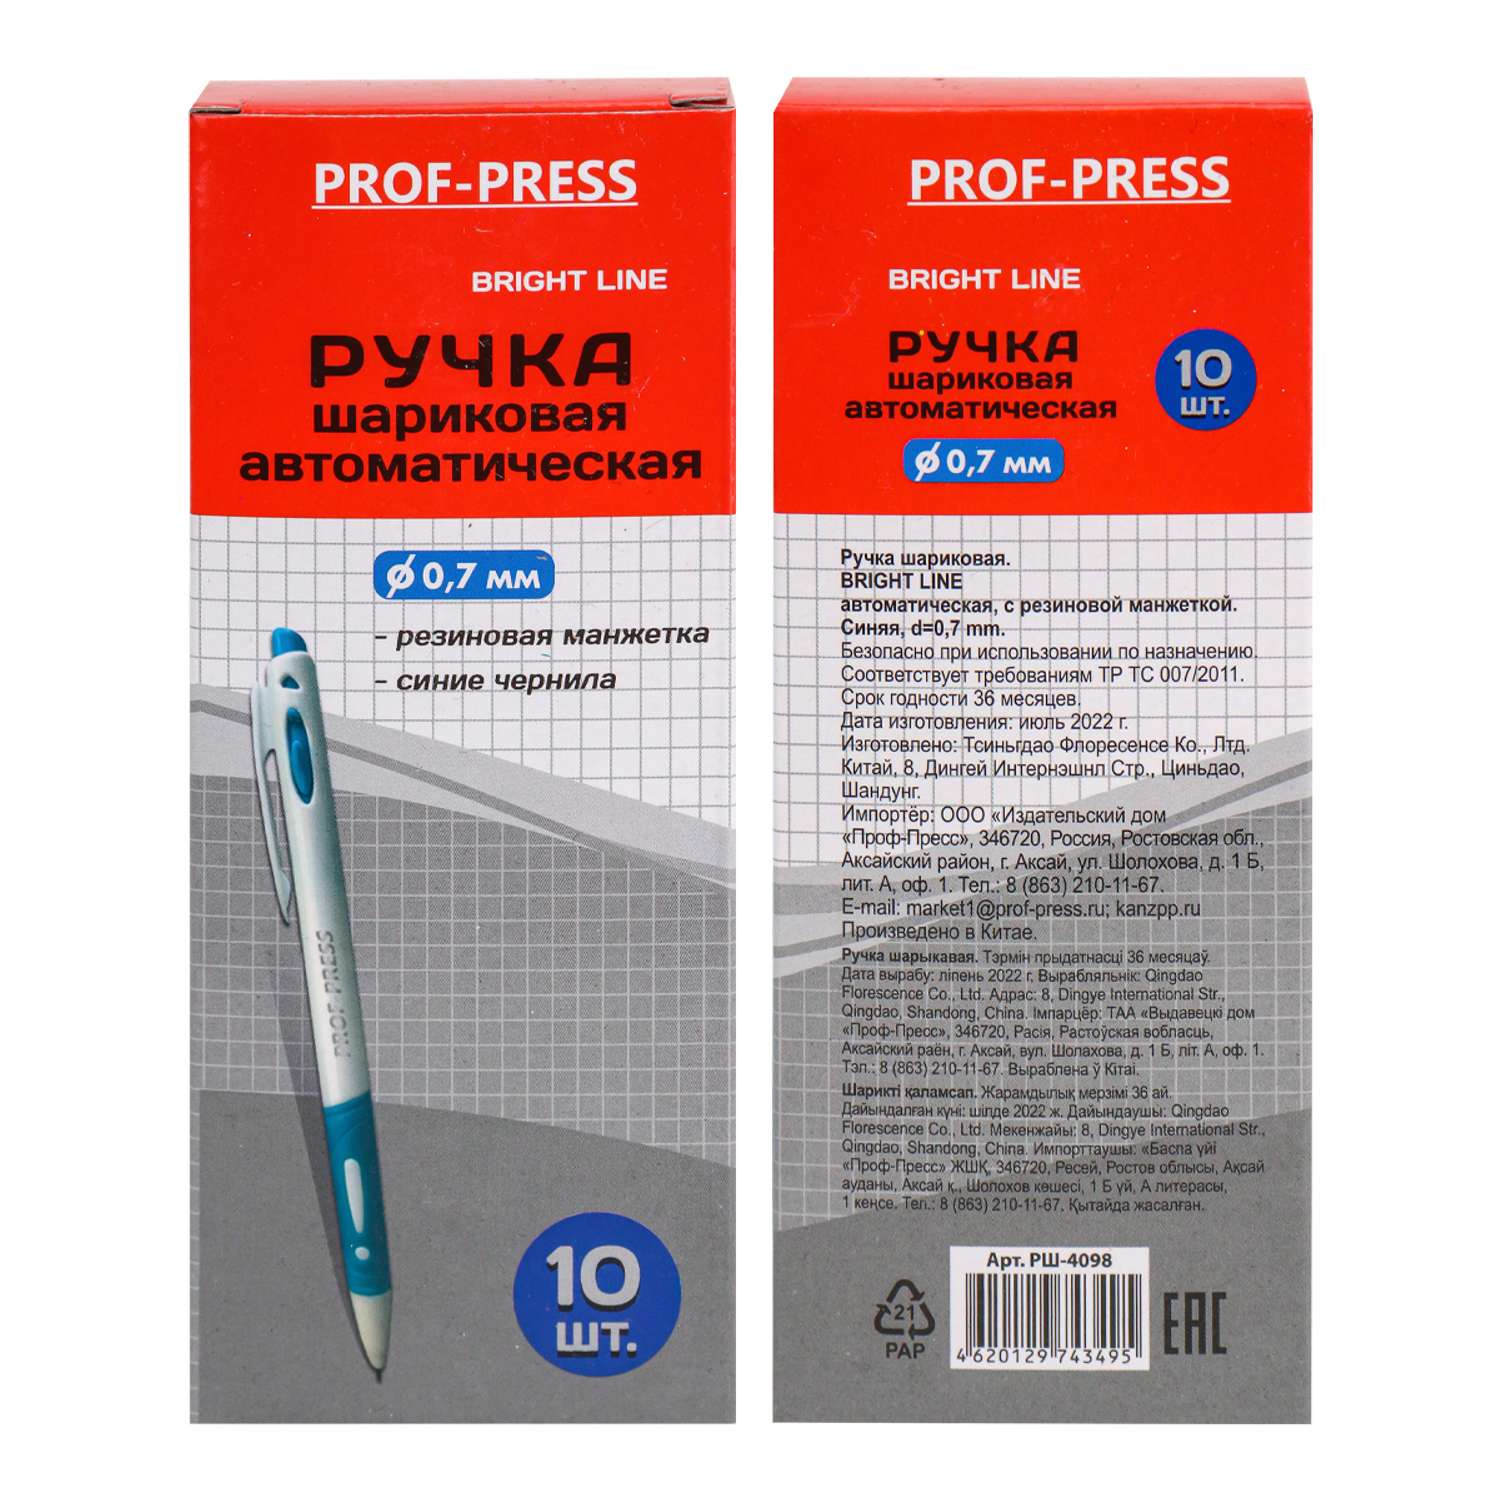 Ручка шариковая Prof-Press синяя bright line автоматическая с рез манжеткой 10шт - фото 8